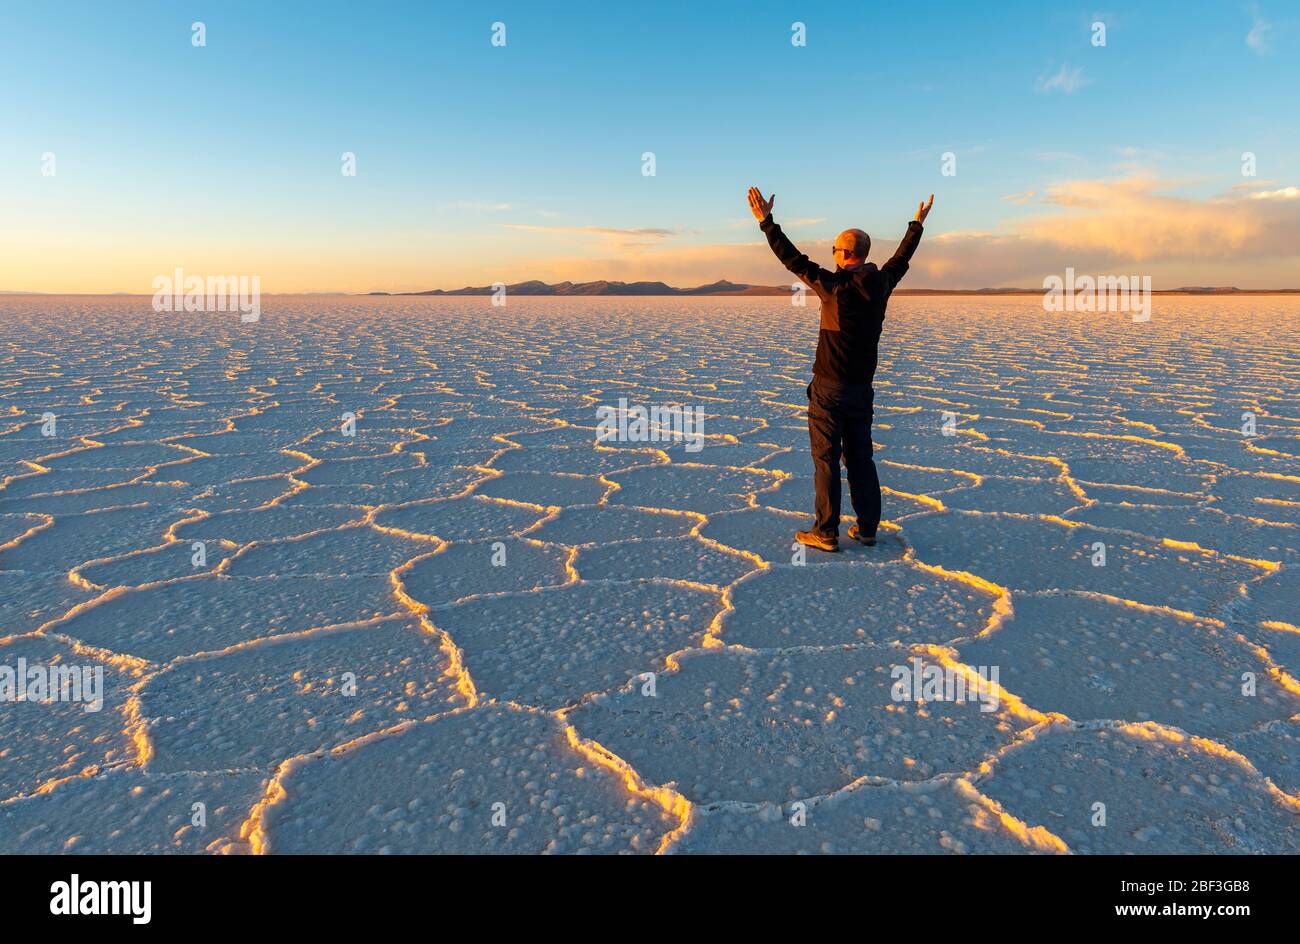 Sonnenuntergang der Uyuni Salt Flat Desert mit Hexagon Salzformationen und einem kaukasischen männlichen Touristen mit gestreckten Händen in der Luft, Bolivien. Stockfoto